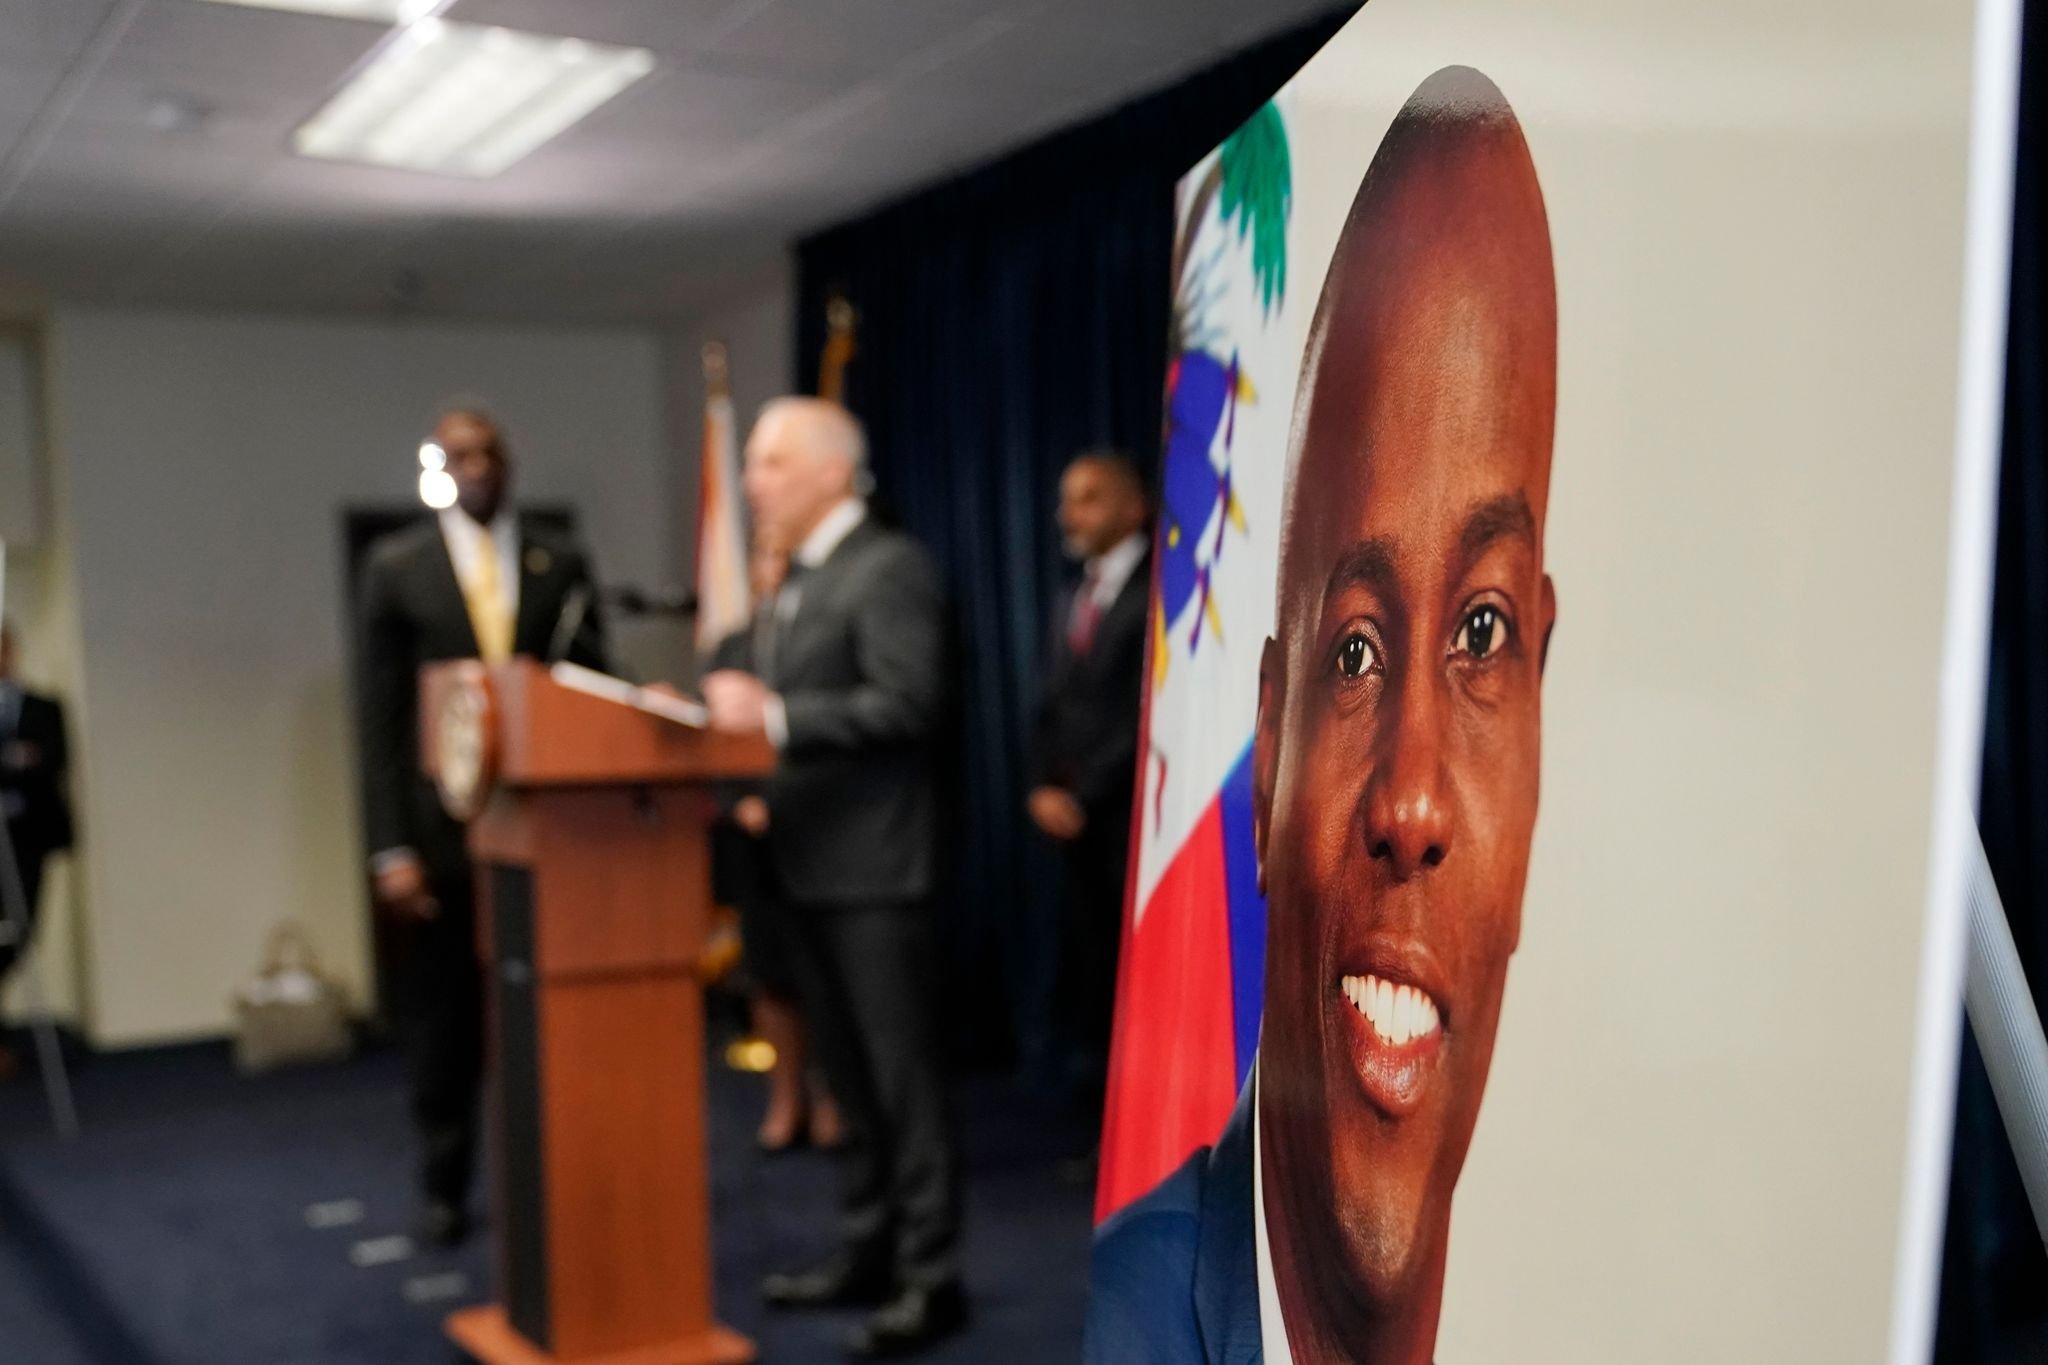 Mord an Haitis Präsident: Haftstrafe für Geschäftsmann